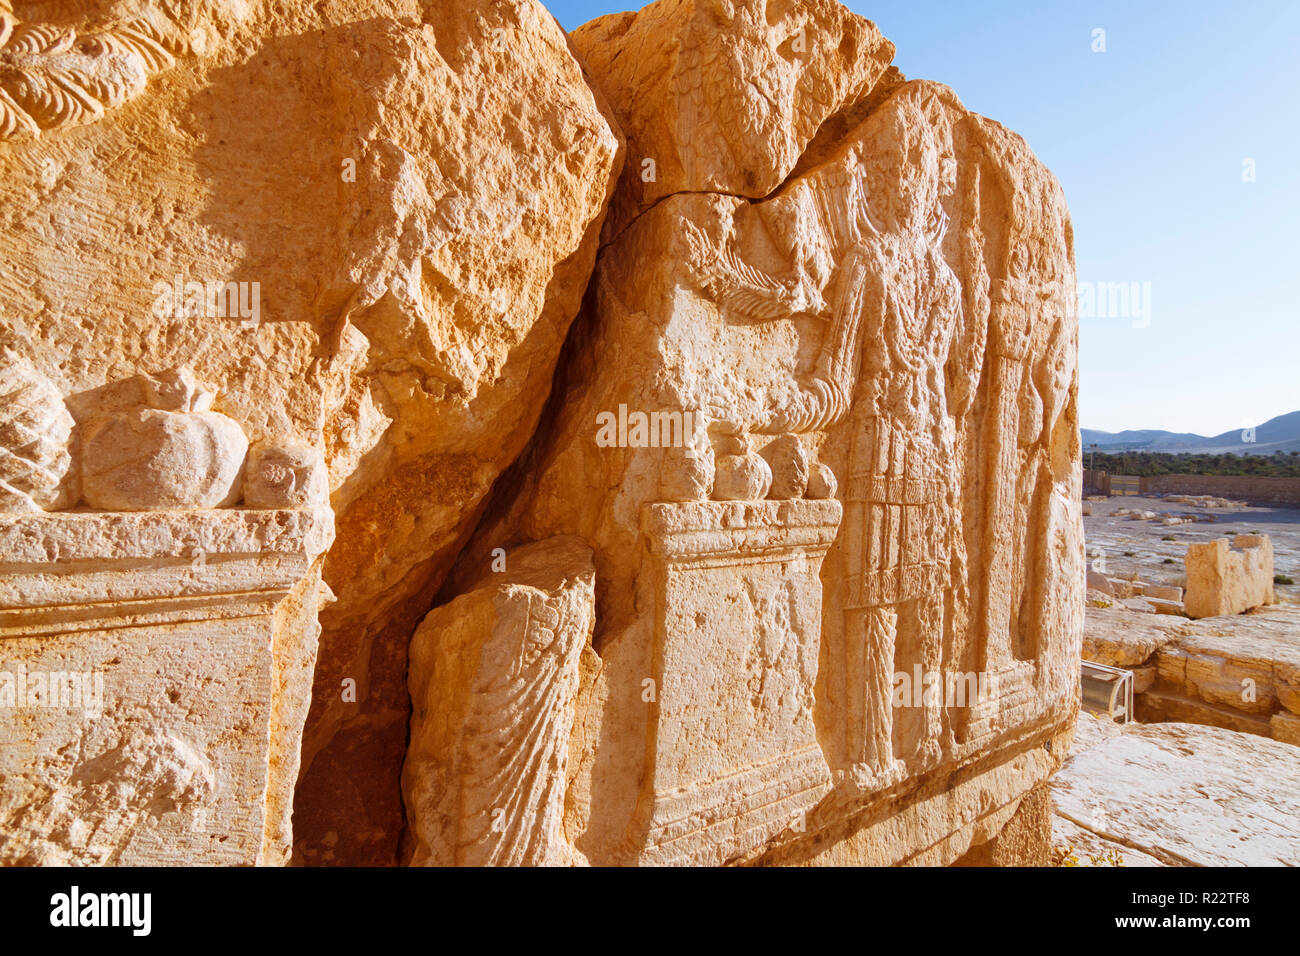 Palmyra, Homs Governatorato, Siria - Maggio 27th, 2009 : il primo secolo d.c. sollievo dalla cella del tempio di Bel raffigurante Bel come un aquila ricevendo off Foto Stock